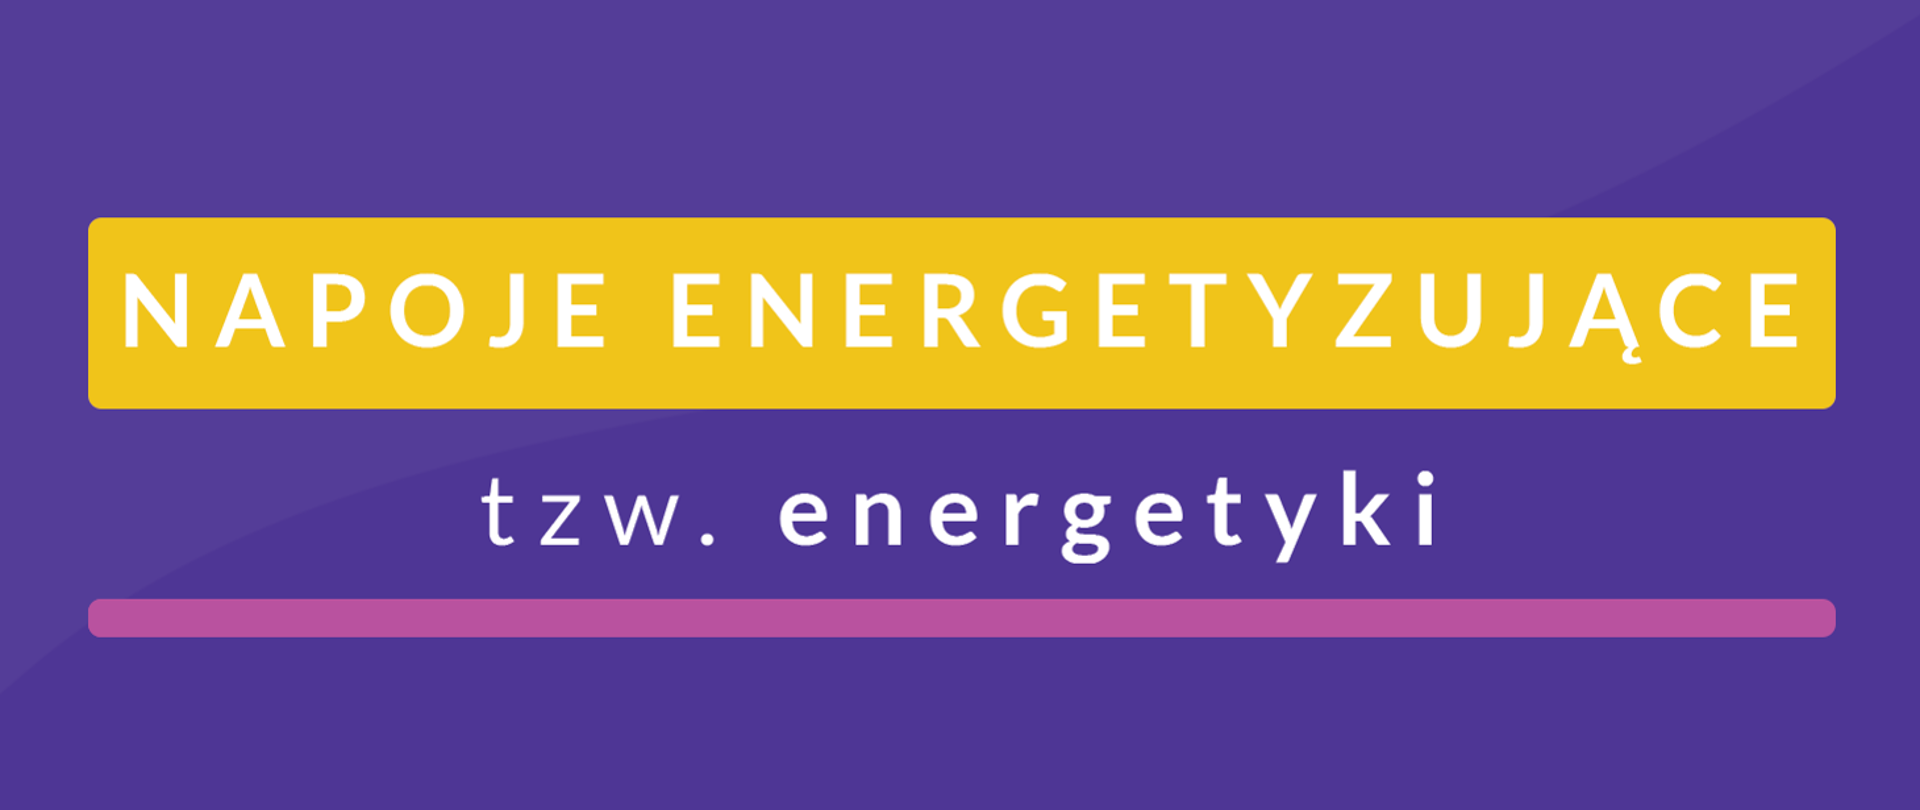 grafika kolorowa, w prostokącie o kolorze fioletowym na żółtym tle biały napis napoje energetyzujące, pod napis TZW. energetyki